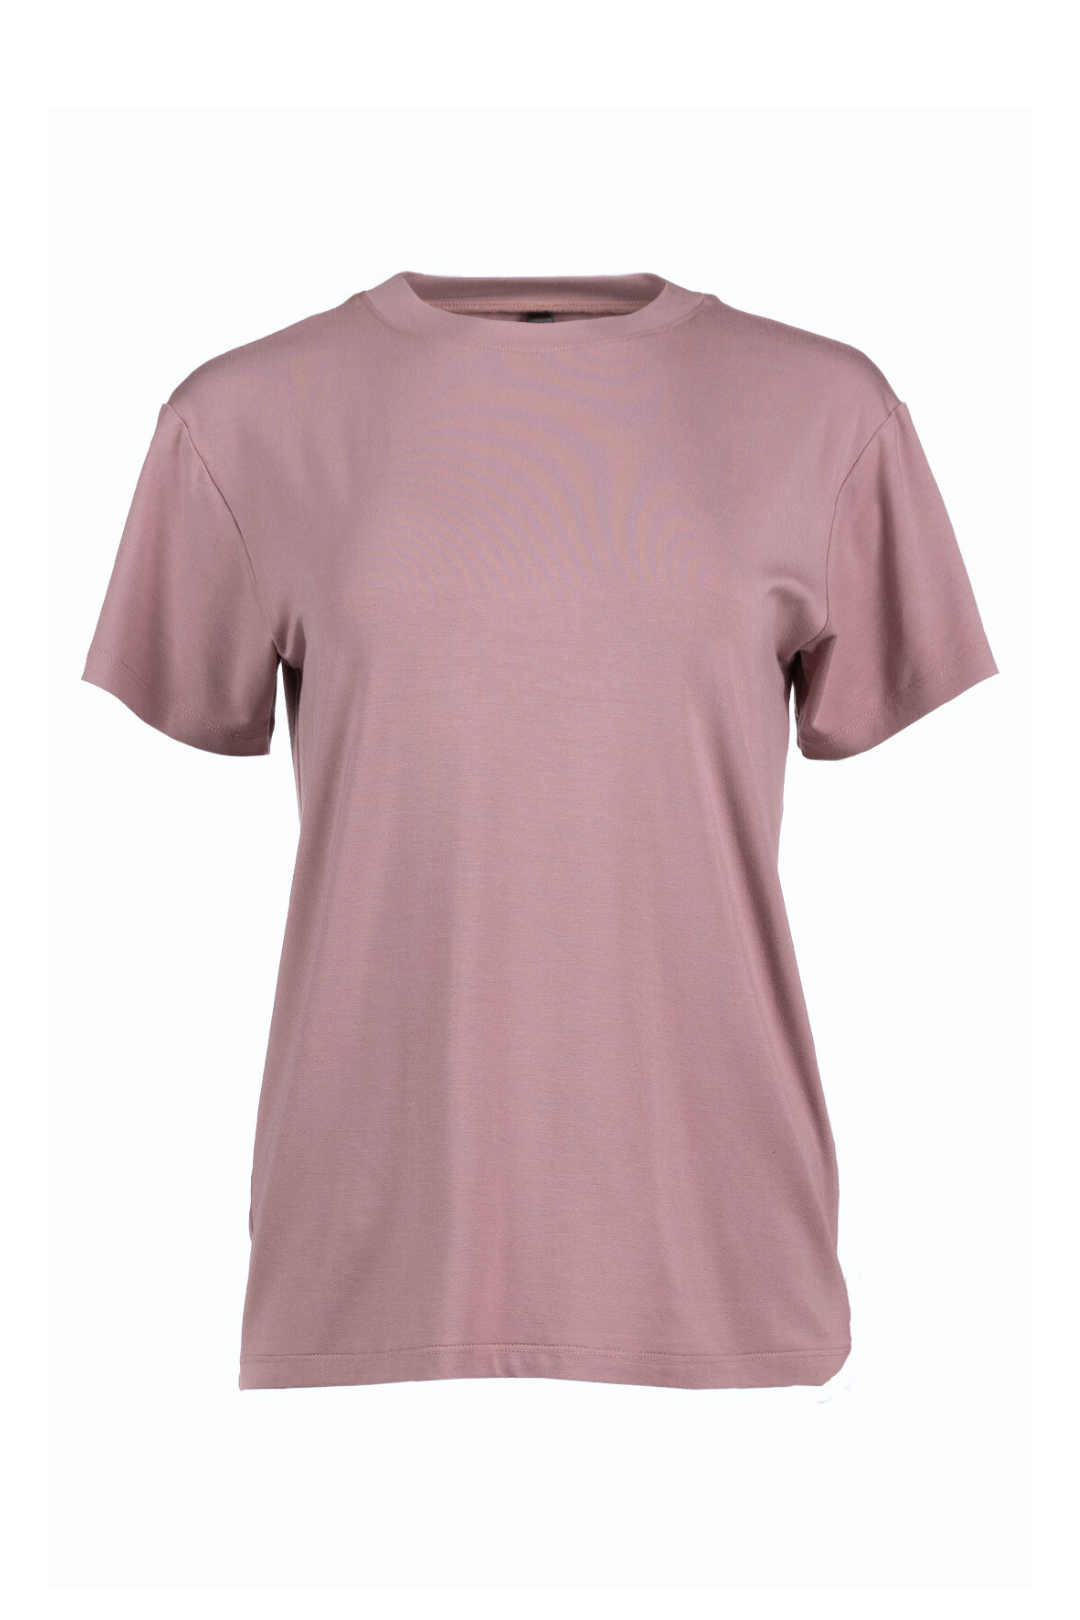 T-shirt rose encolure ronde | Samie